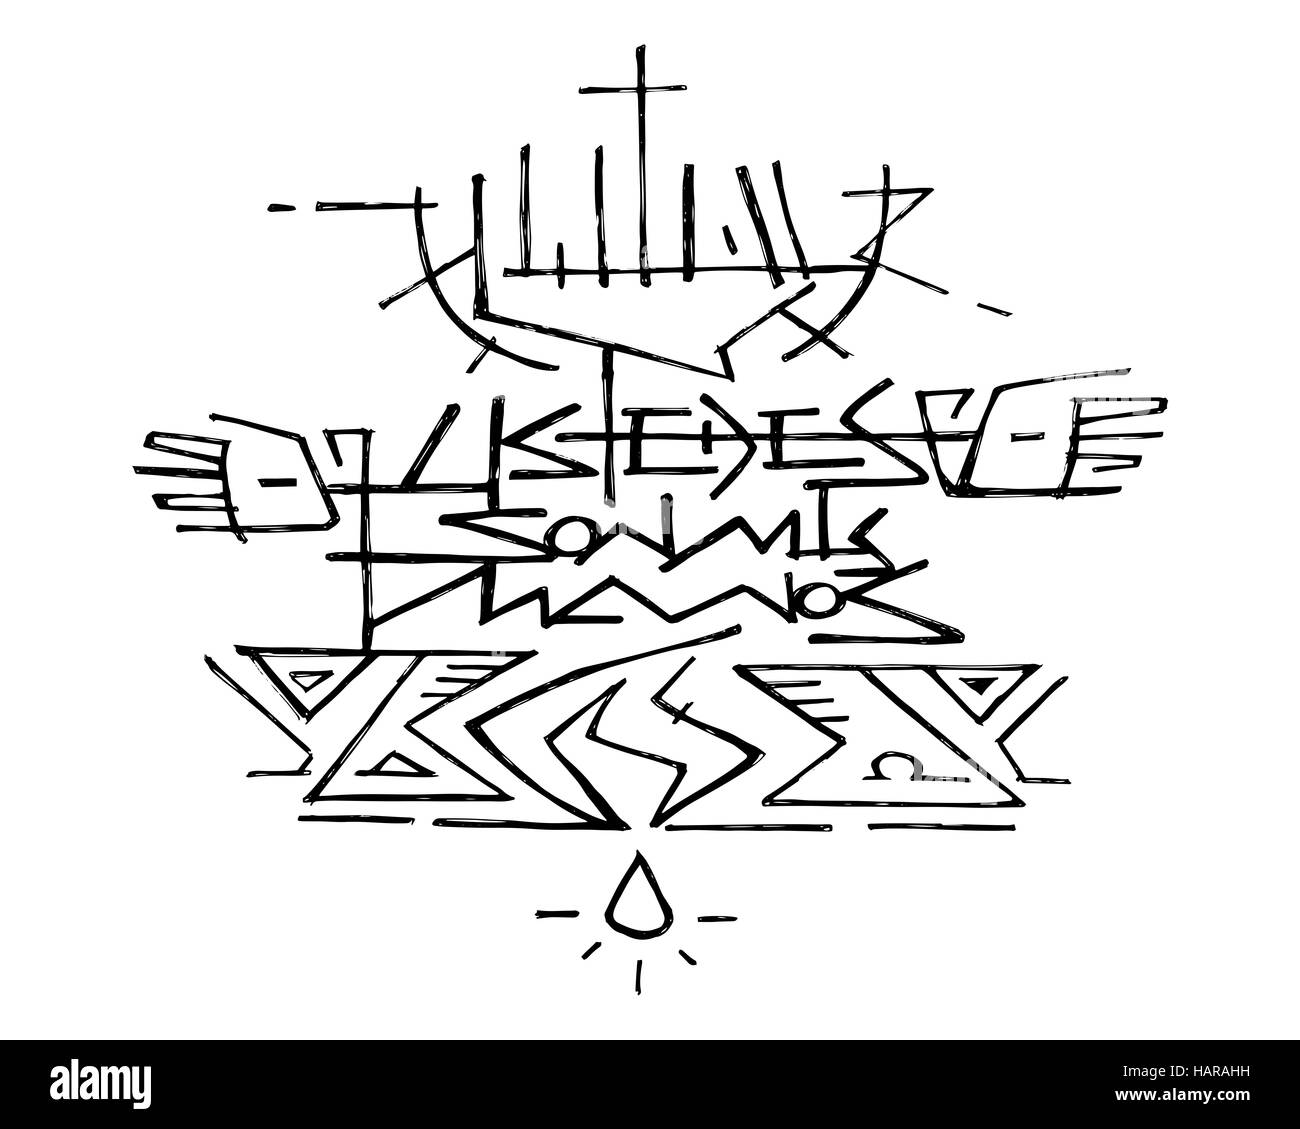 Vektor-Illustration von Hand gezeichnet oder Zeichnung von Jesus Christus an das Kreuz und den Satz auf Spanisch: Ustedes Son mis Manos, welches bedeutet: Ihr seid meine Hände Stockfoto